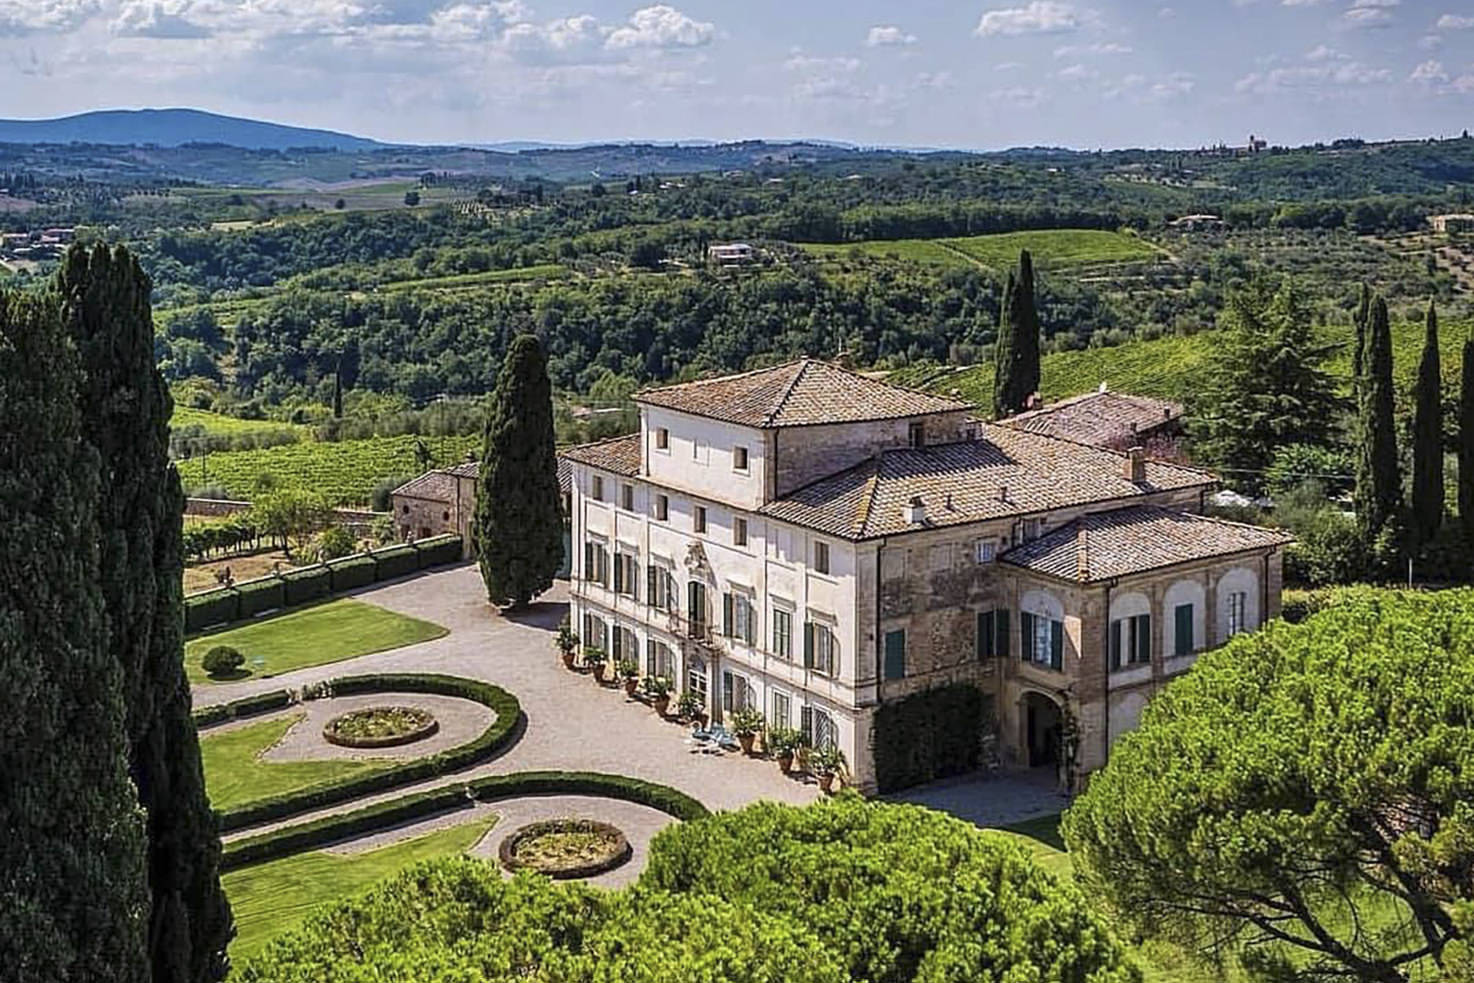 Villa di Geggiano near Siena